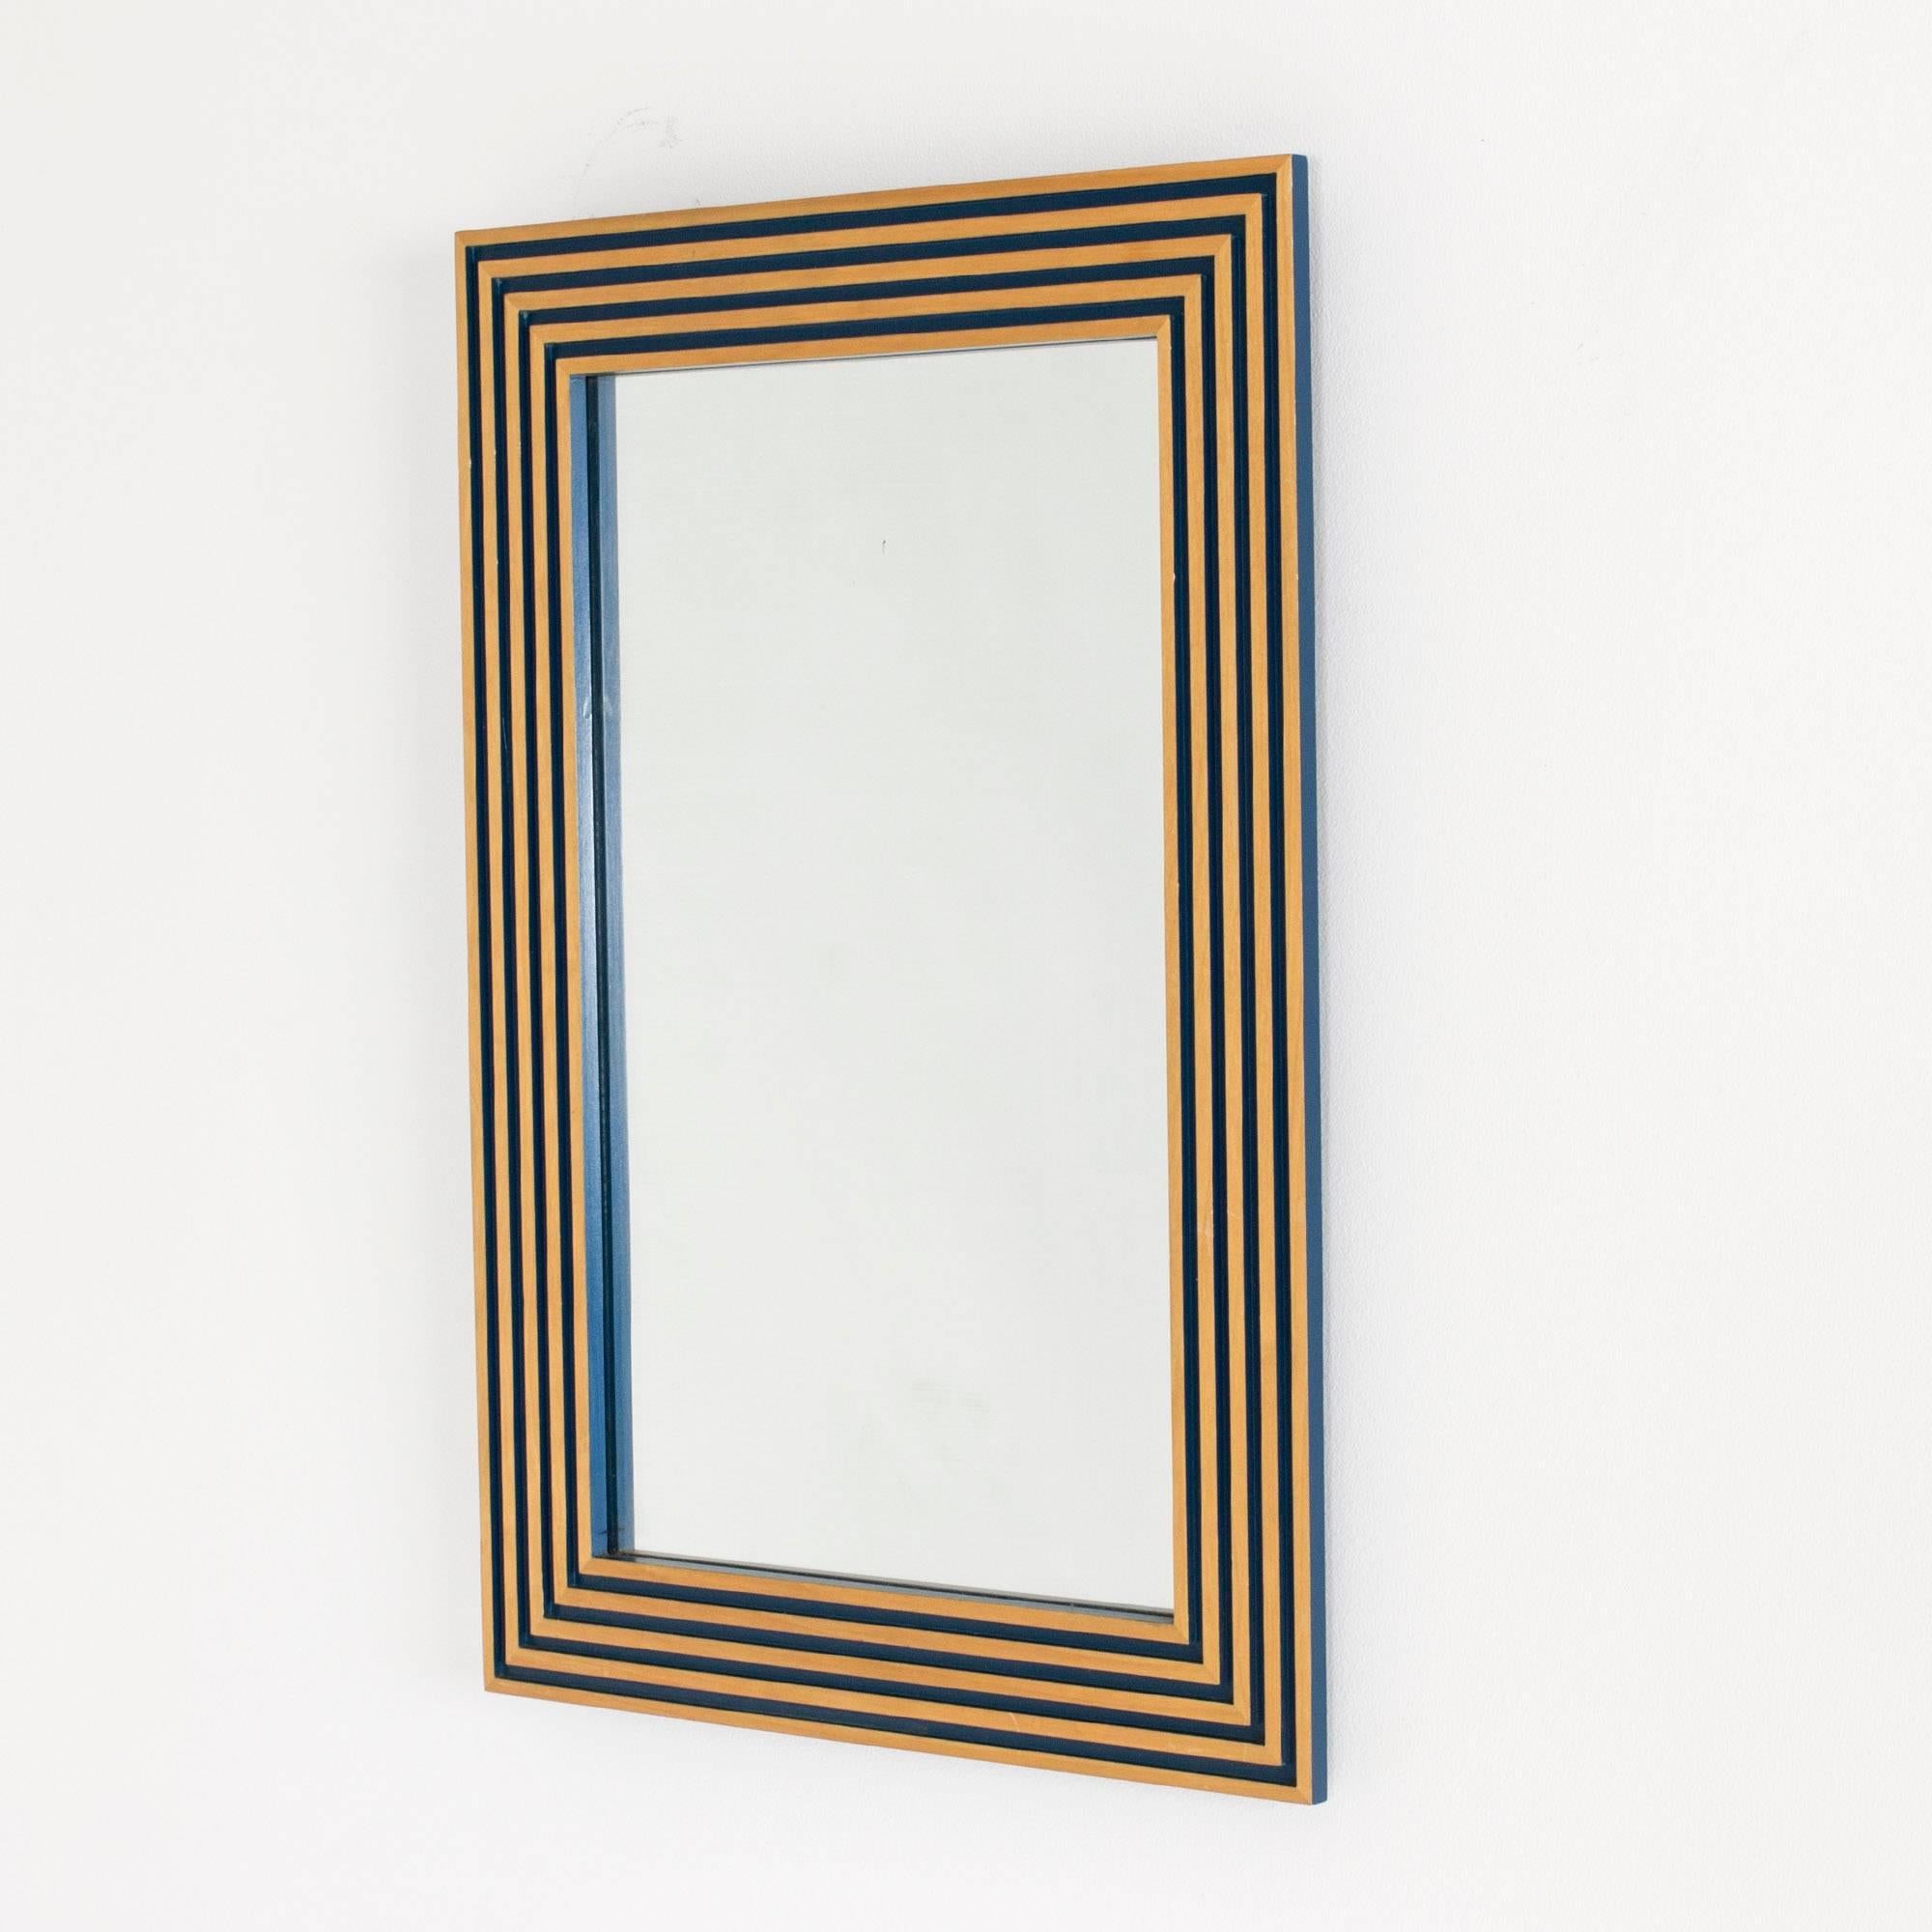 Miroir mural saisissant et intemporel de Susanne Tucker et Maurice Holland, fabriqué en bois embossé dans un motif géométrique. Cadre laqué bleu à l'intérieur des gaufrages, avec du bois apparent en surface, donnant une impression de dorure.